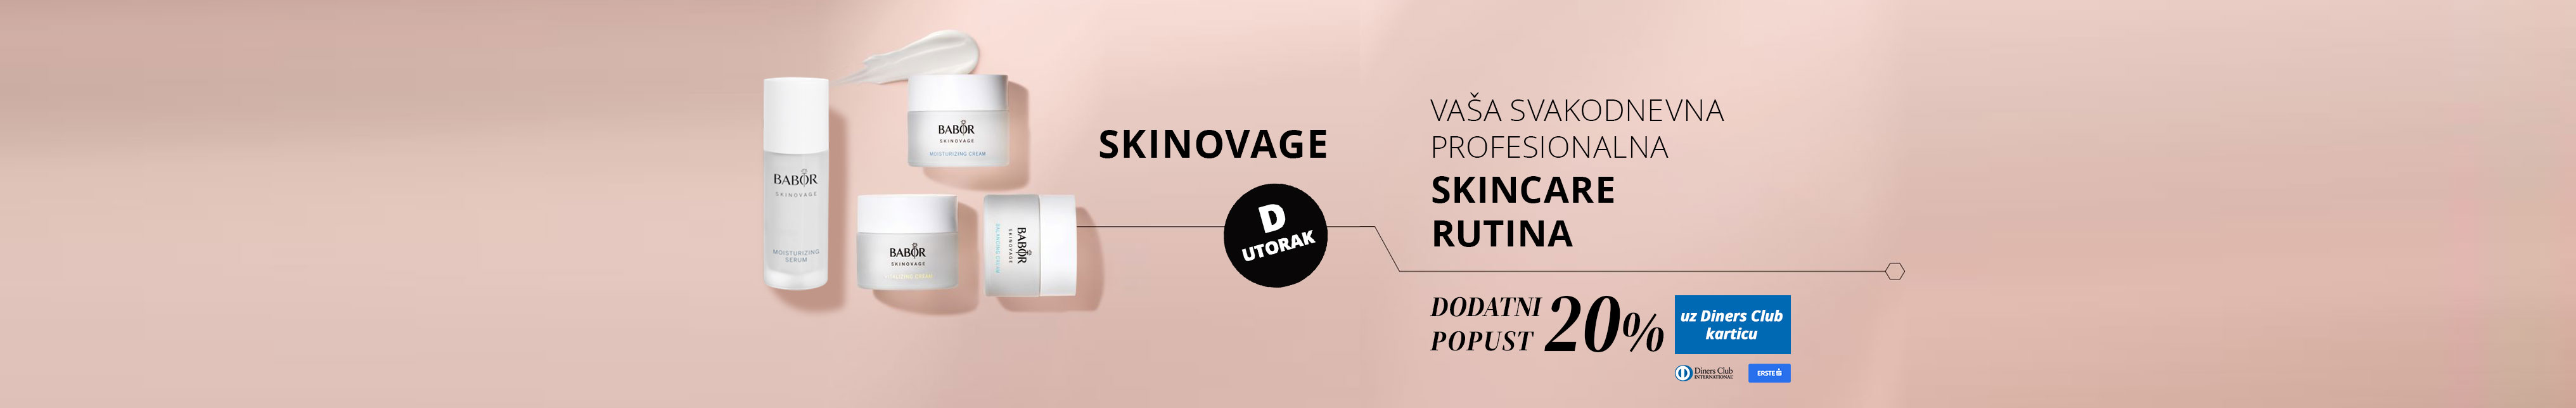 D-utorak - Dodatnih 20% na Skinovage